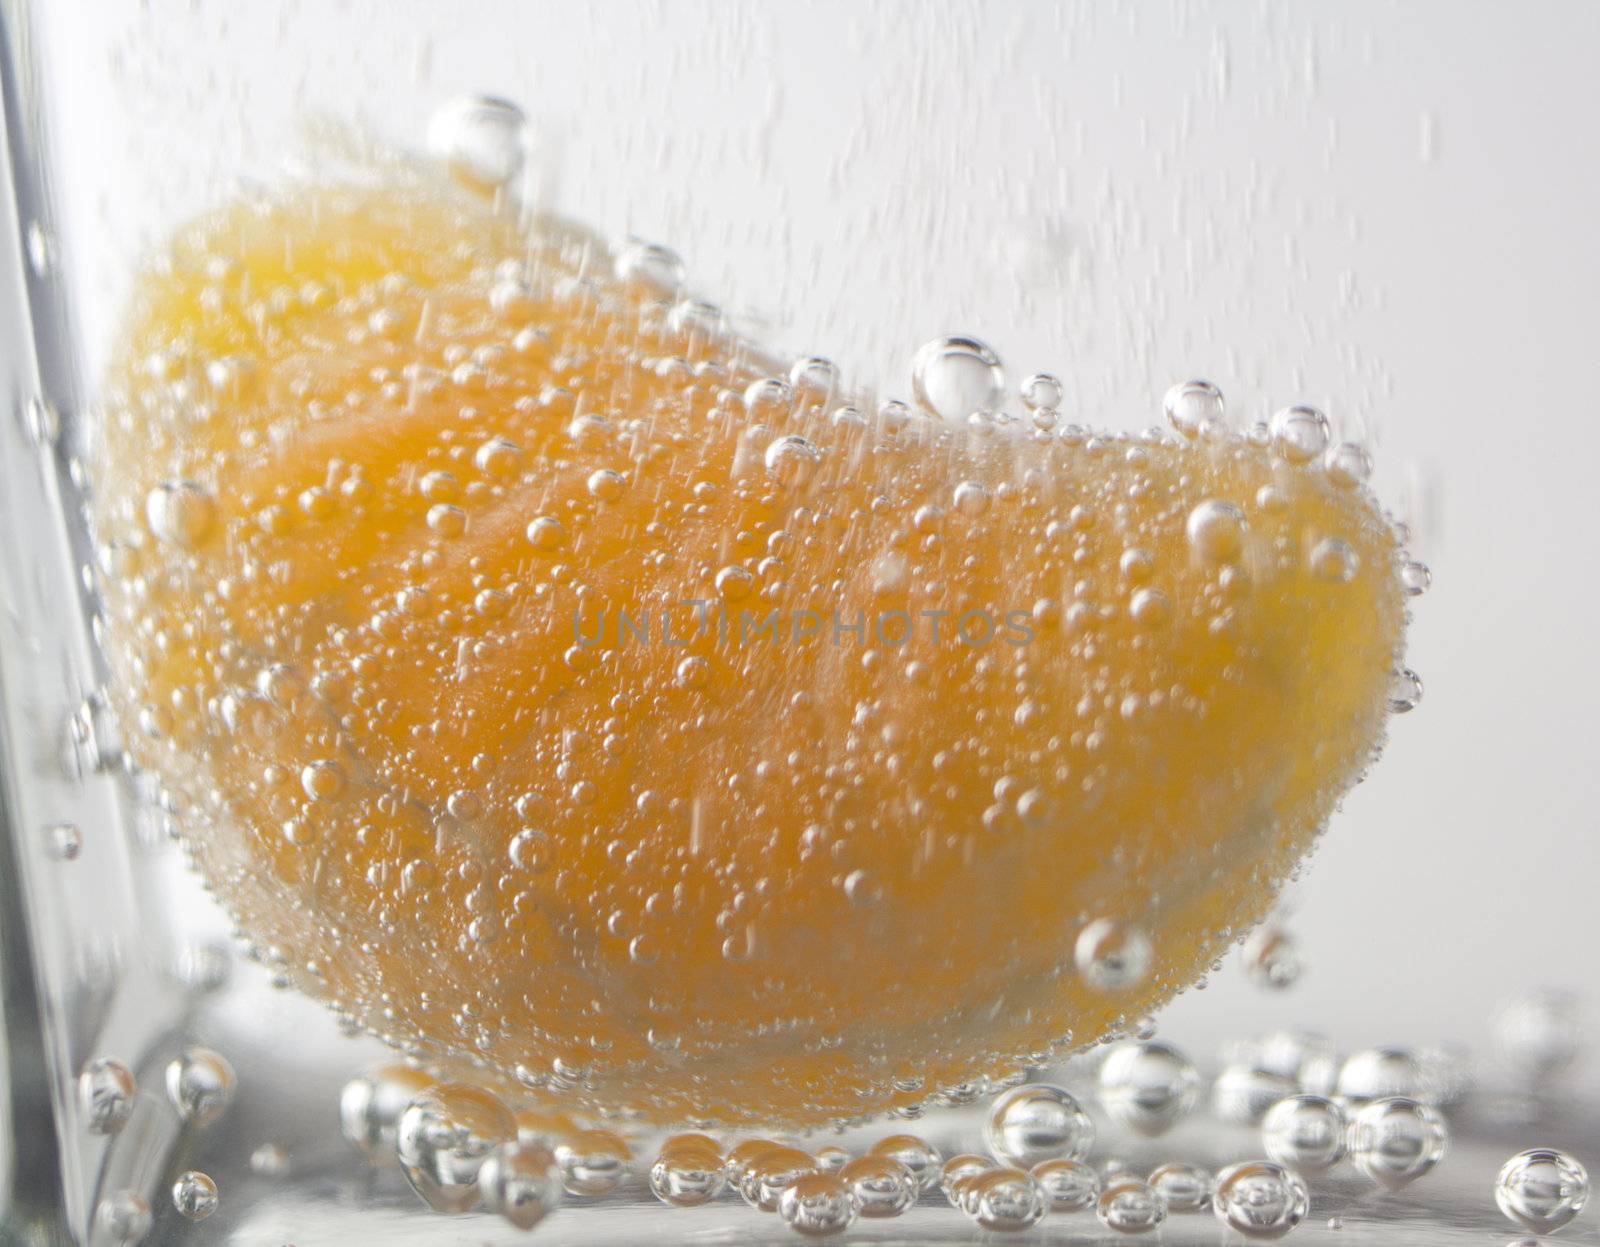 tangerine in water 2 by Alekcey